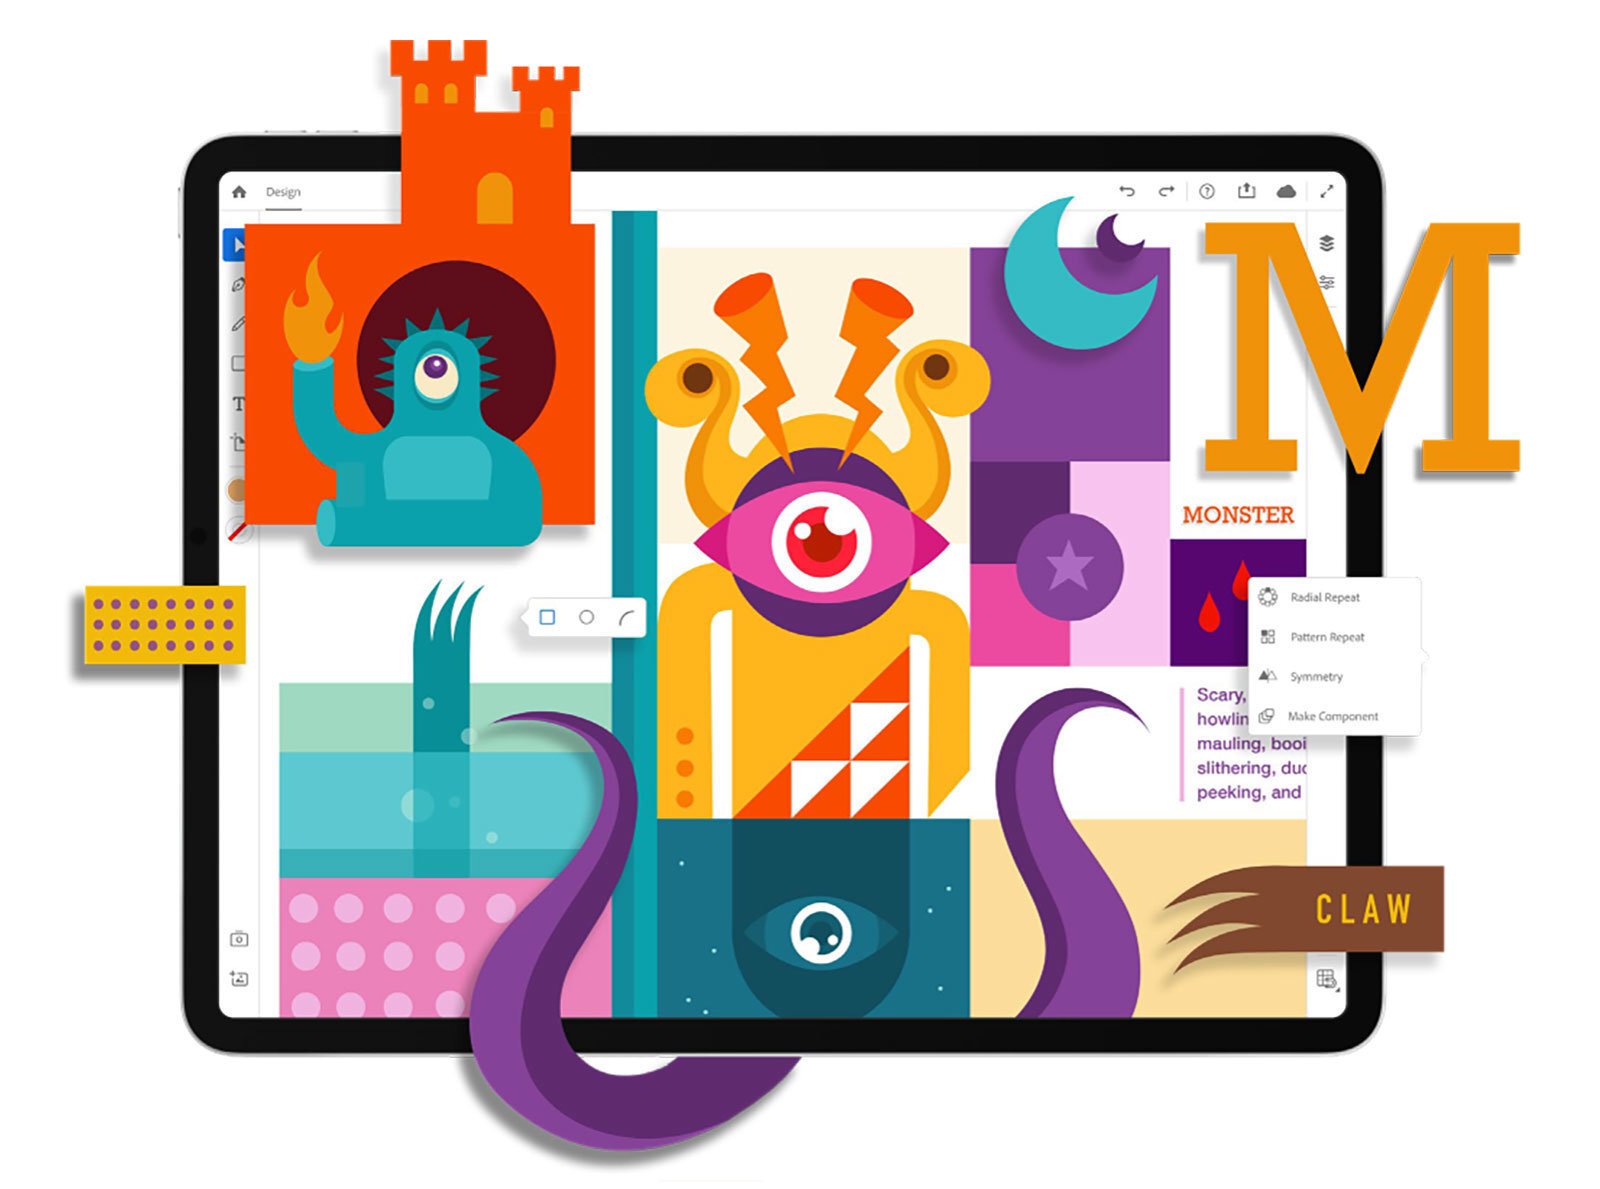 Η Adobe ανακοίνωσε επίσημα την ανάπτυξη του Illustrator για το iPad